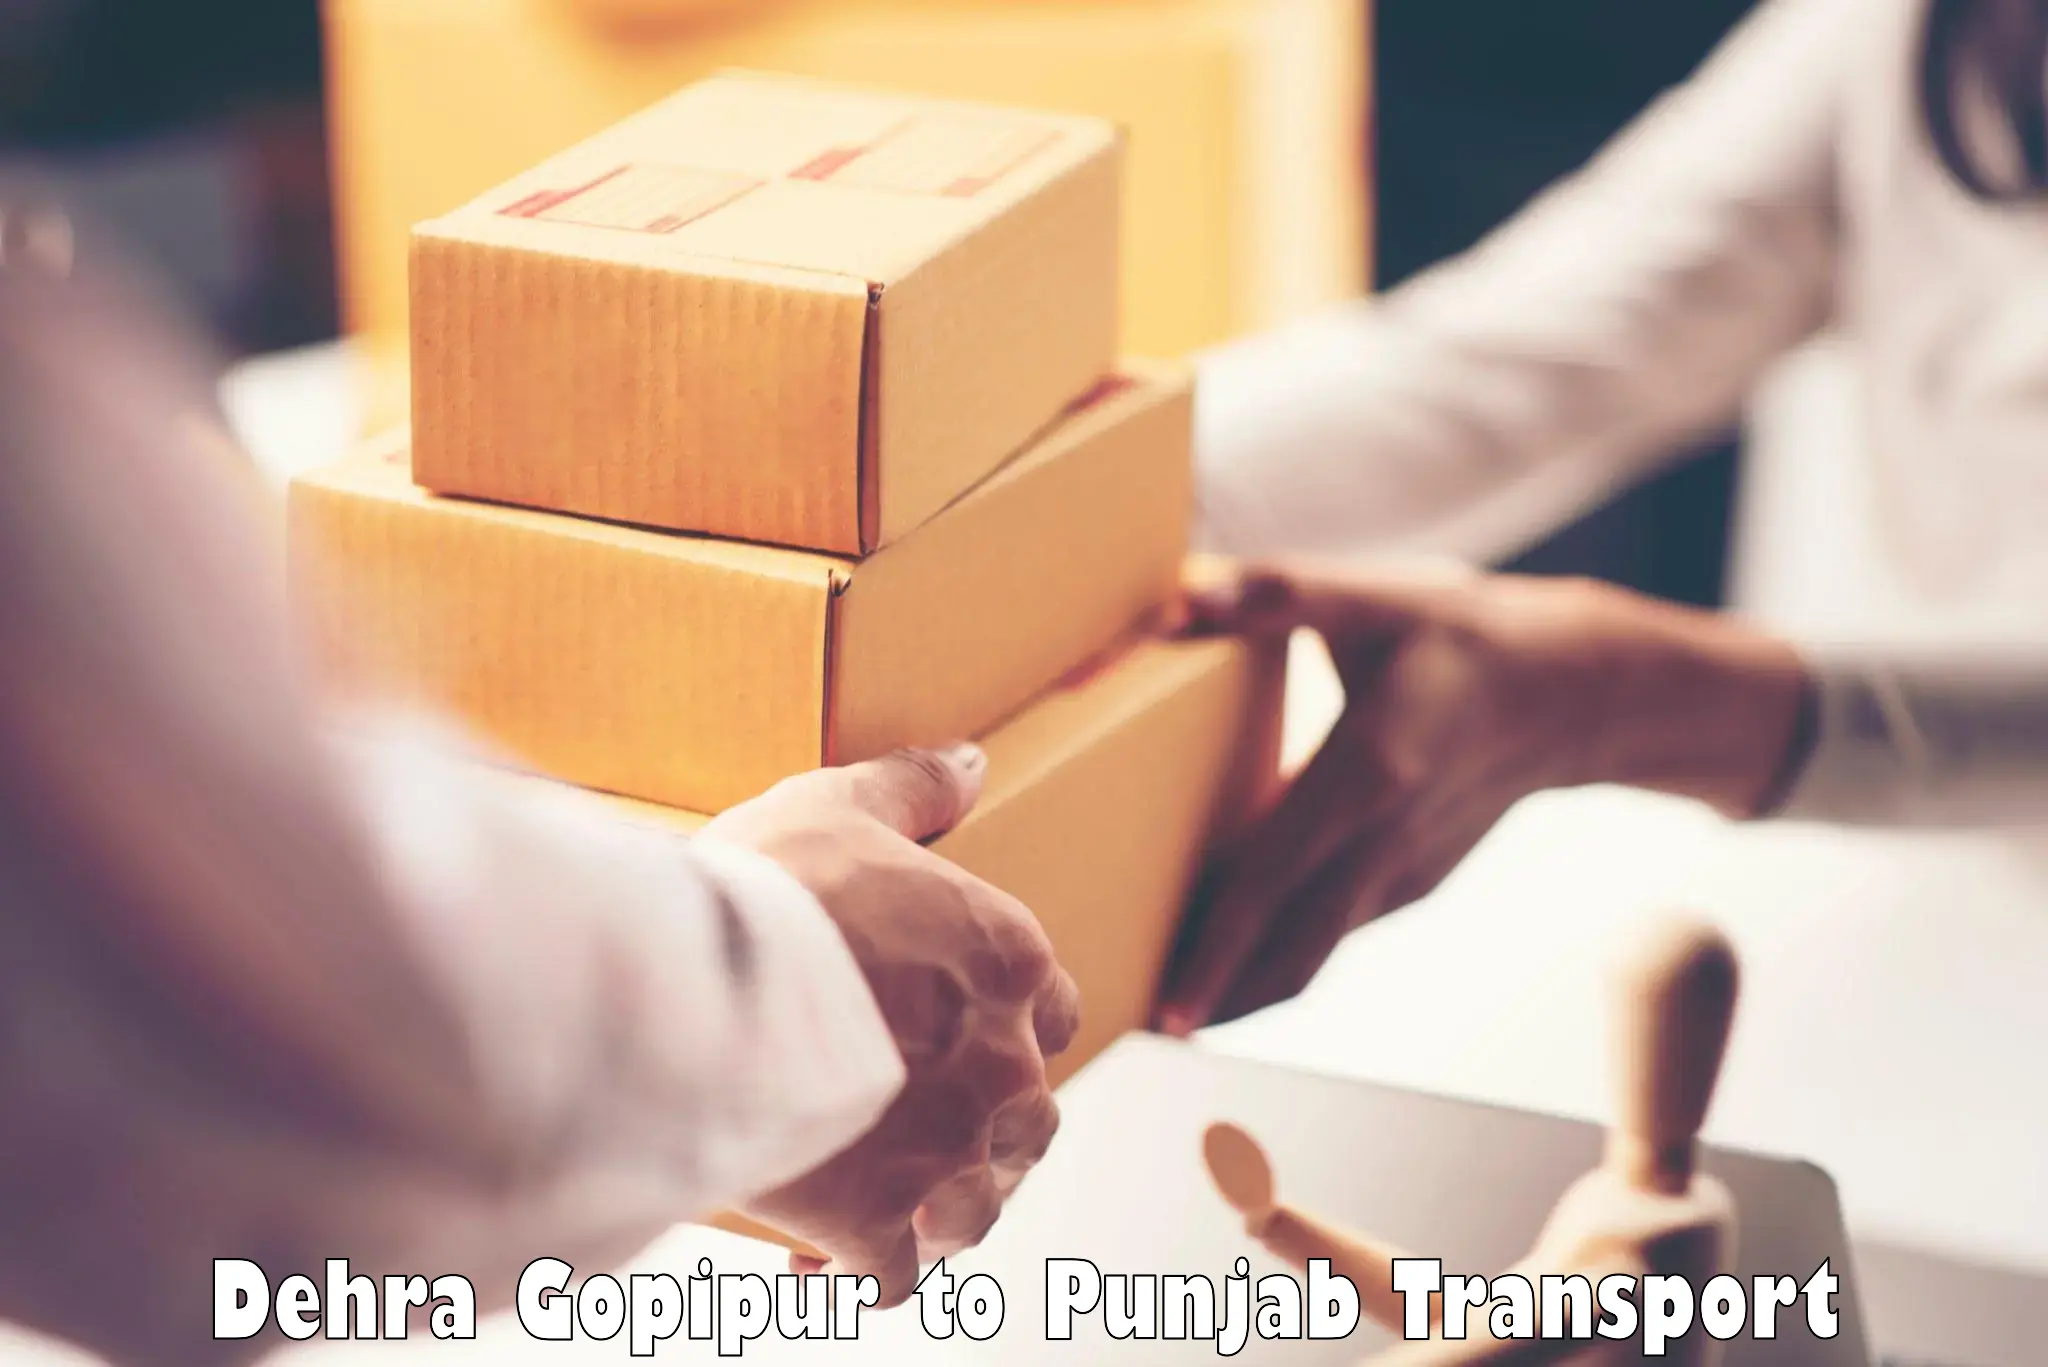 Commercial transport service Dehra Gopipur to Punjab